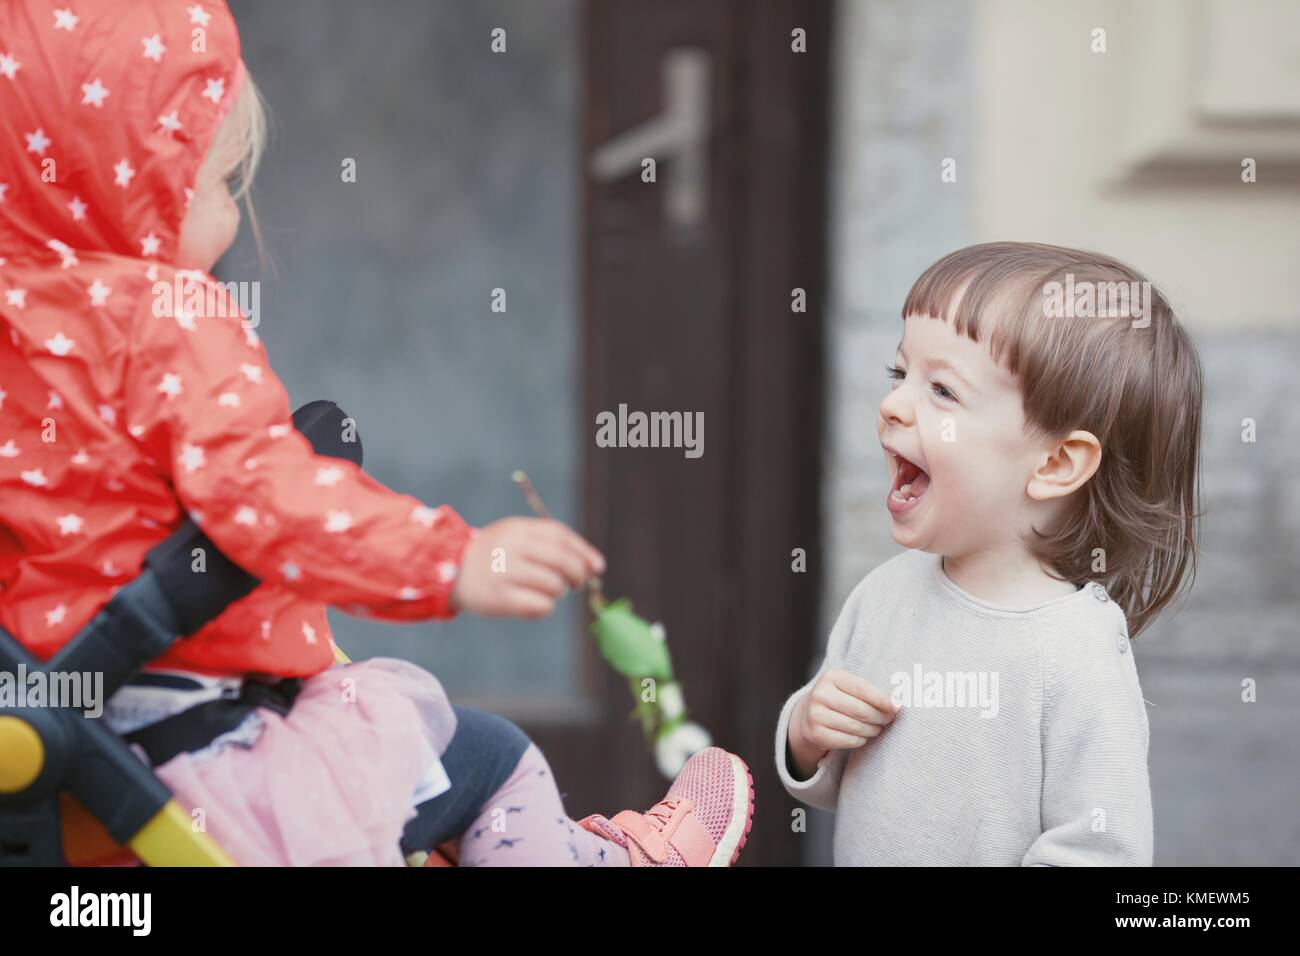 Glückliches Kind mit langen blonden Haaren, das mit einem kleinen Mädchen spielt, das in einem Kinderwagen sitzt. Stockfoto